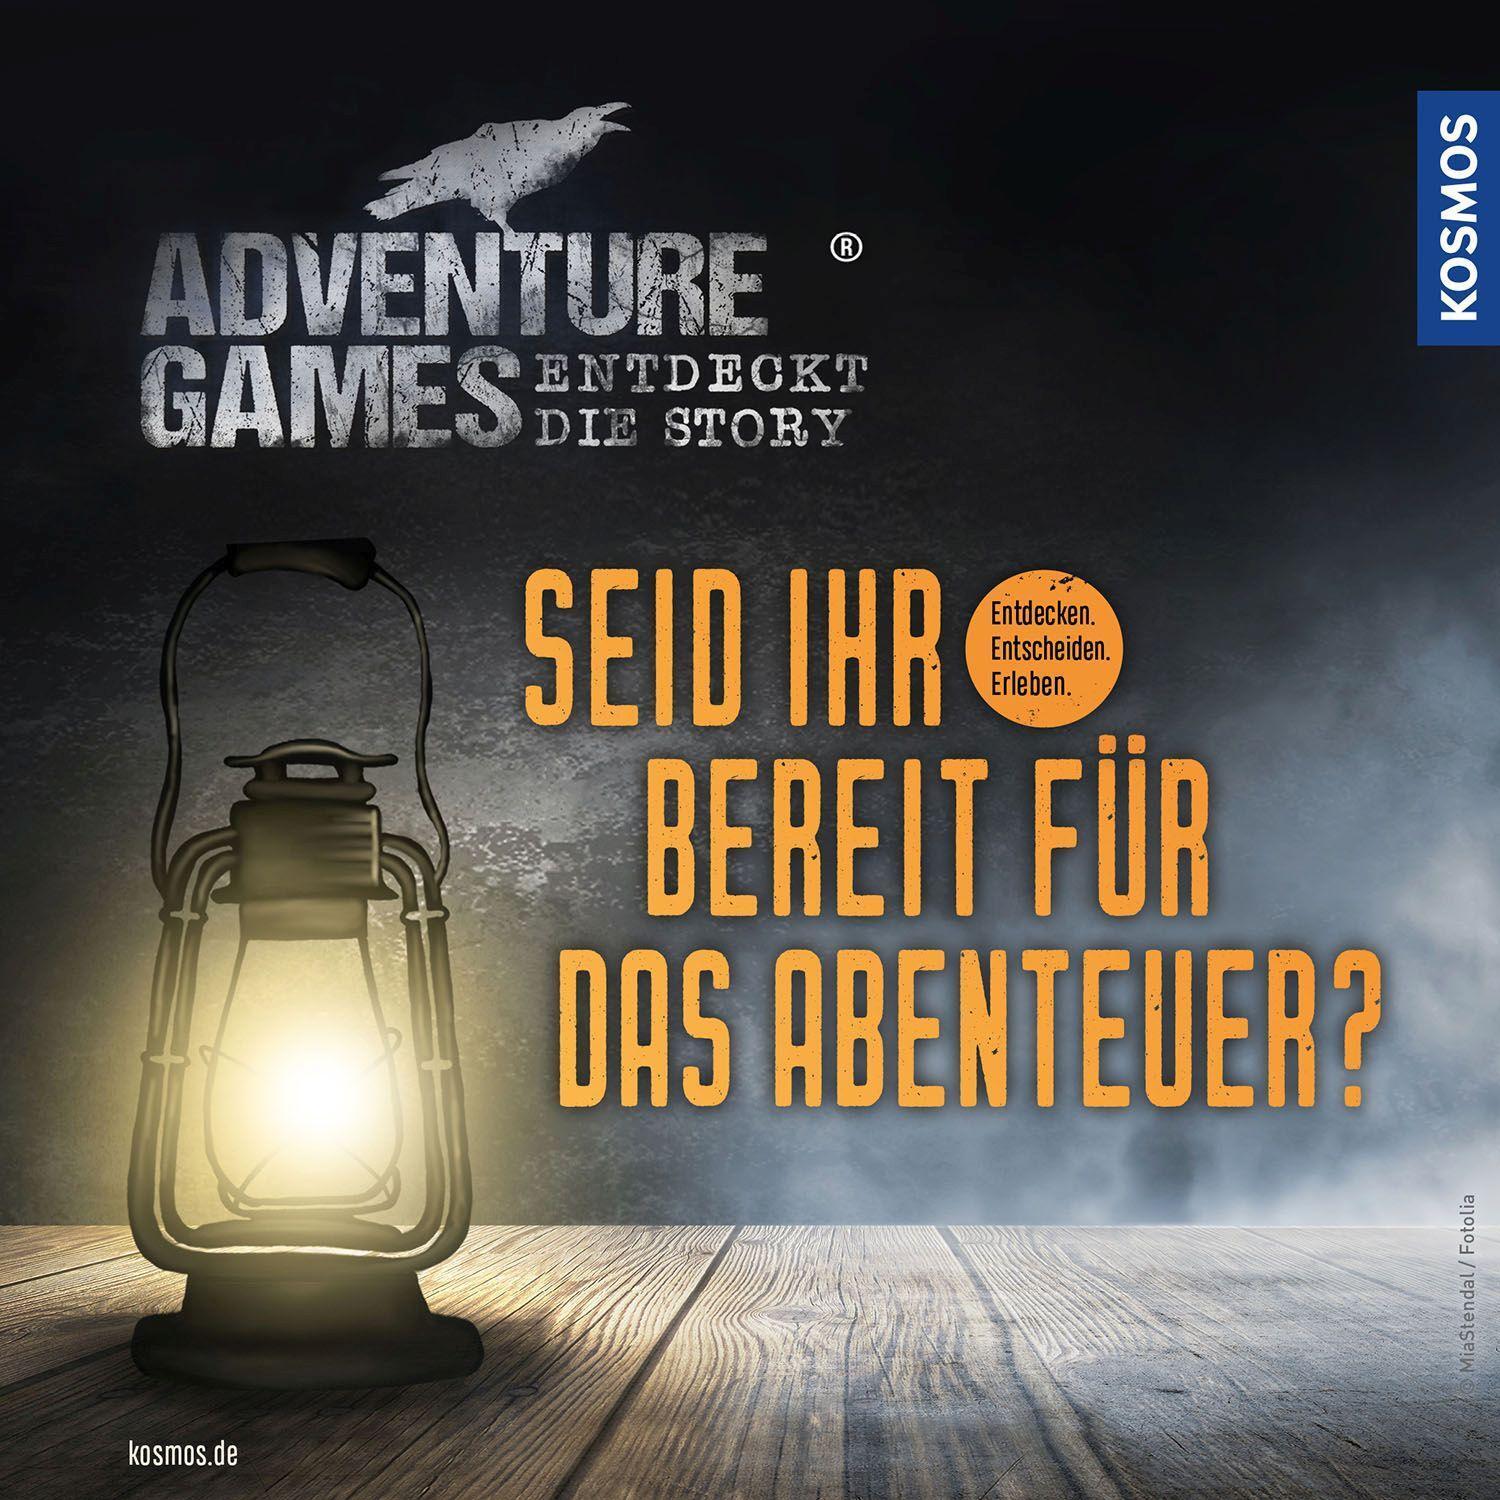 Bild: 4002051682842 | Adventure Games - Expedition Azcana | Spiel | 682842 | Deutsch | 2022